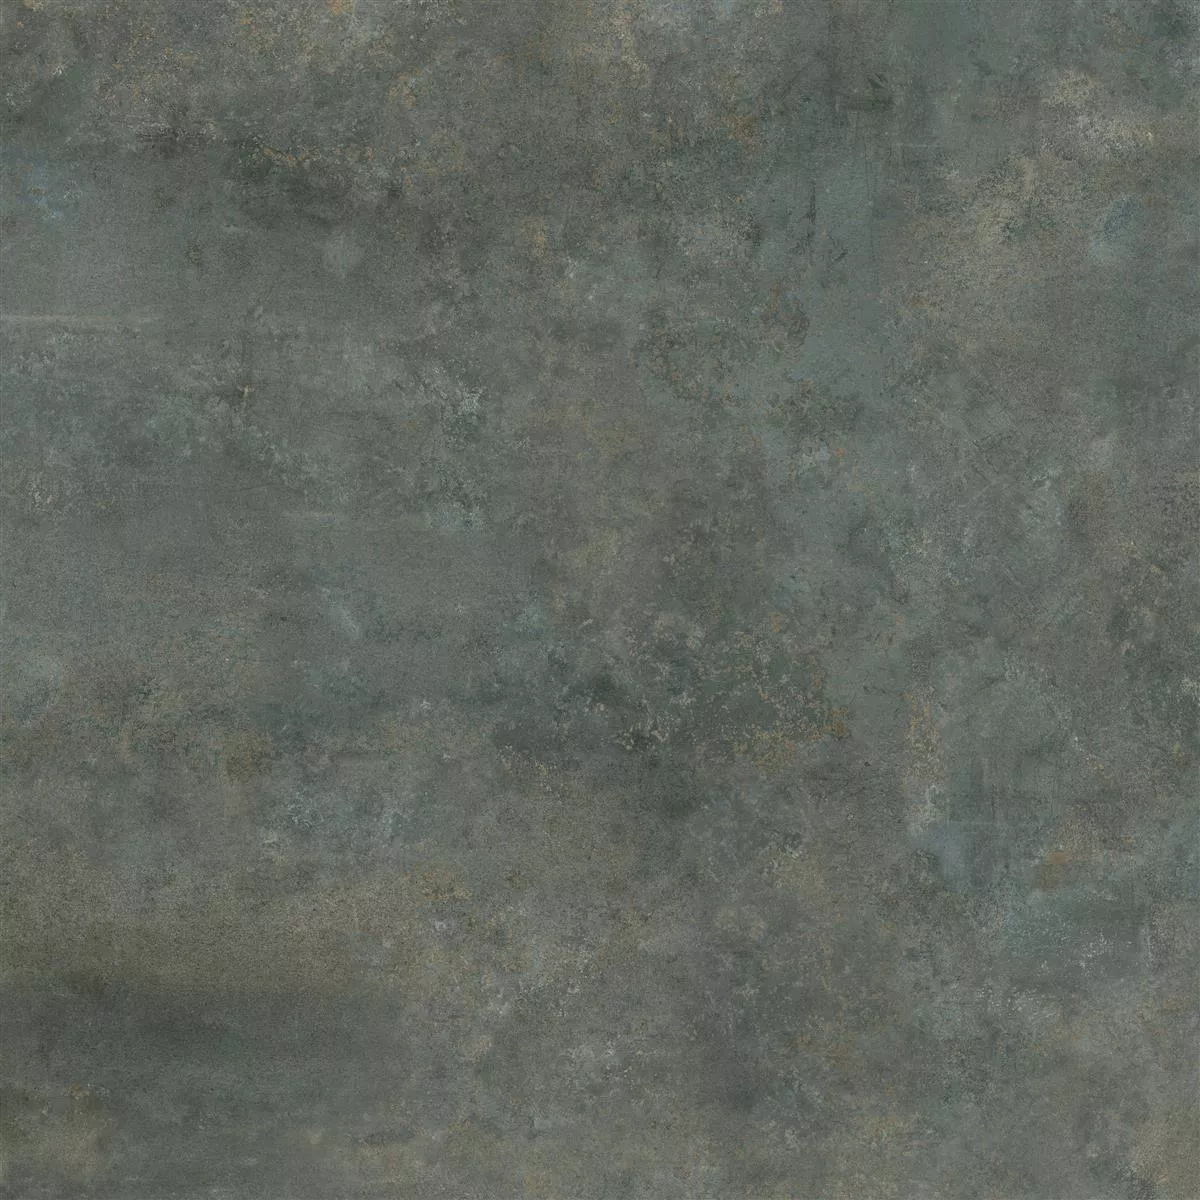 Podlahová Dlaždice Illusion Kovový Vzhled Lappato Ocelově Šedá 120x120cm